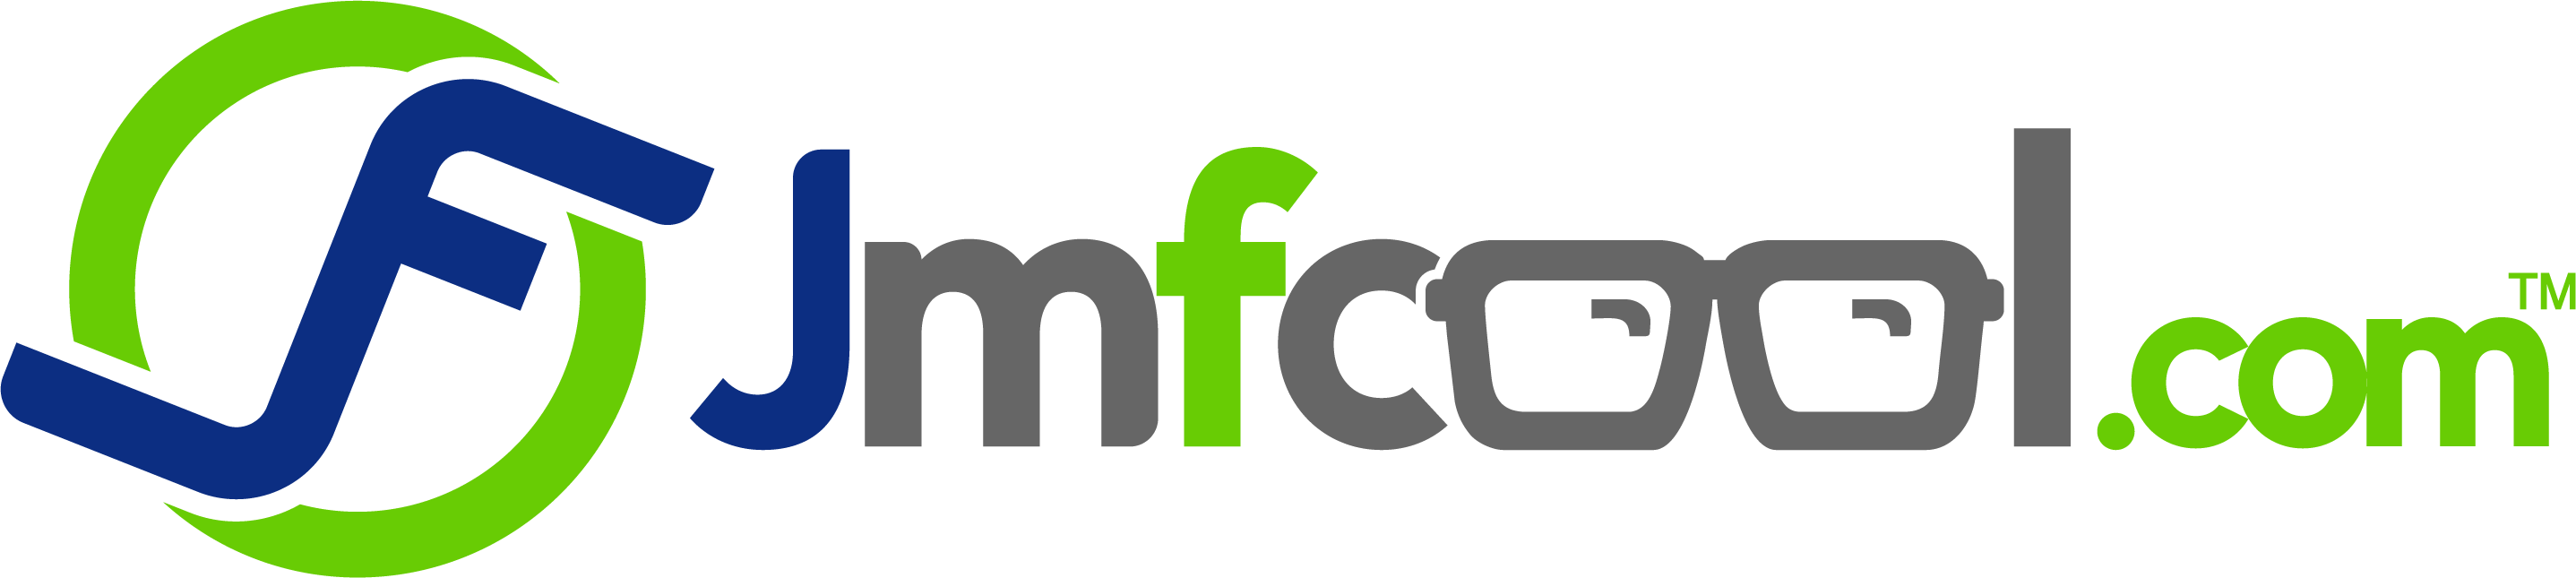 Jmfcool.com Logo